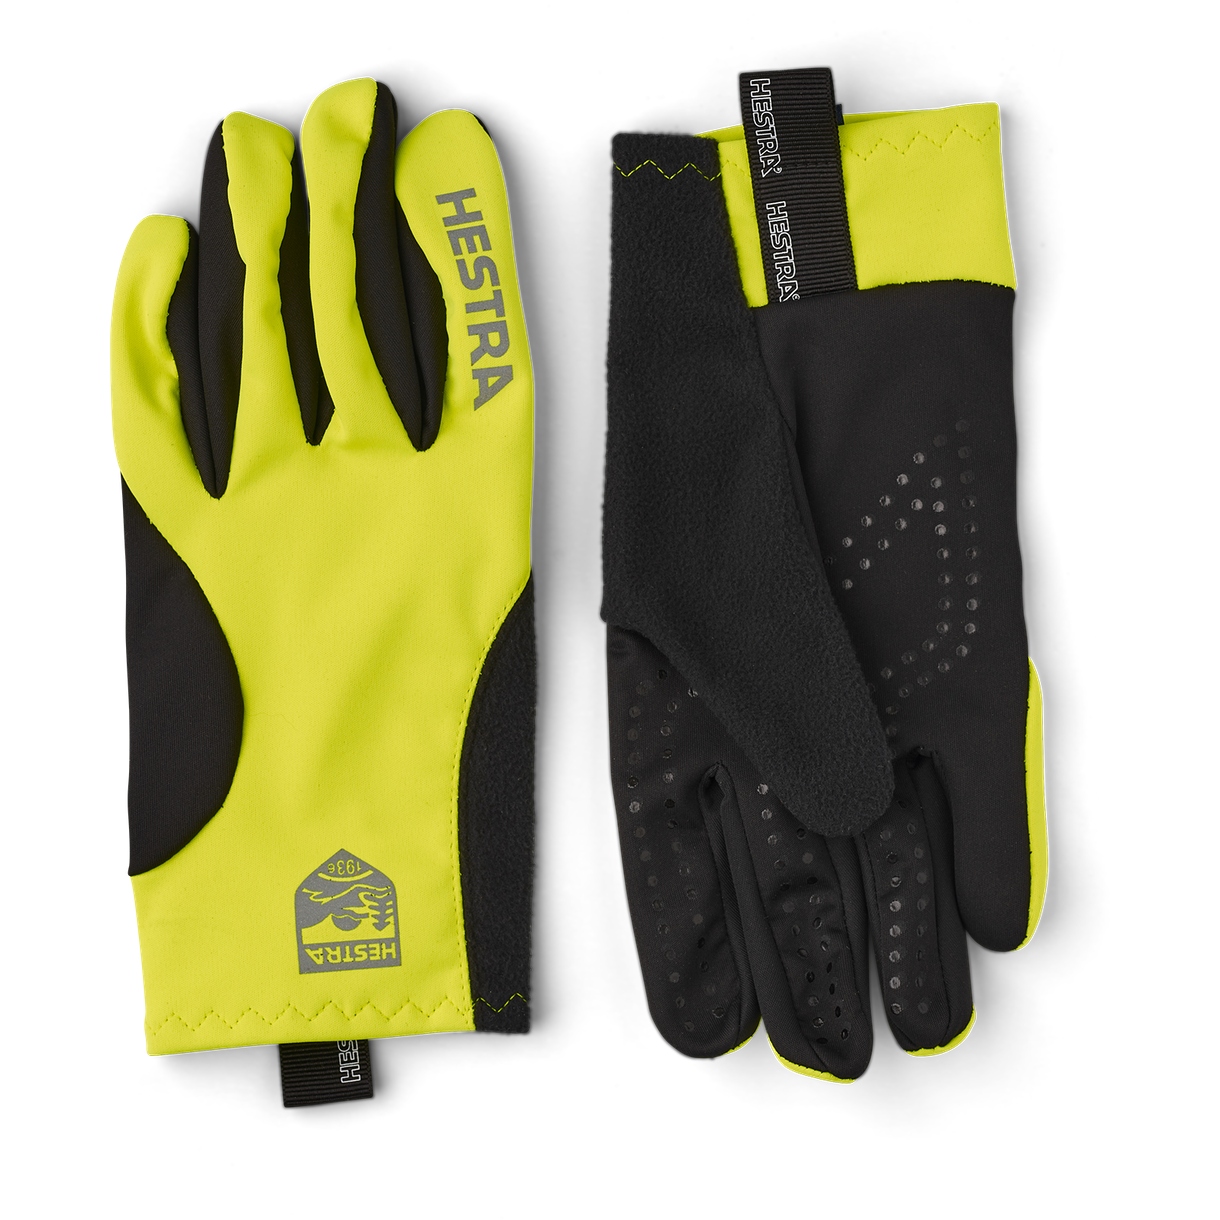 Image of Hestra Runners All Weather - 5 Finger Running Gloves - yellow hi viz